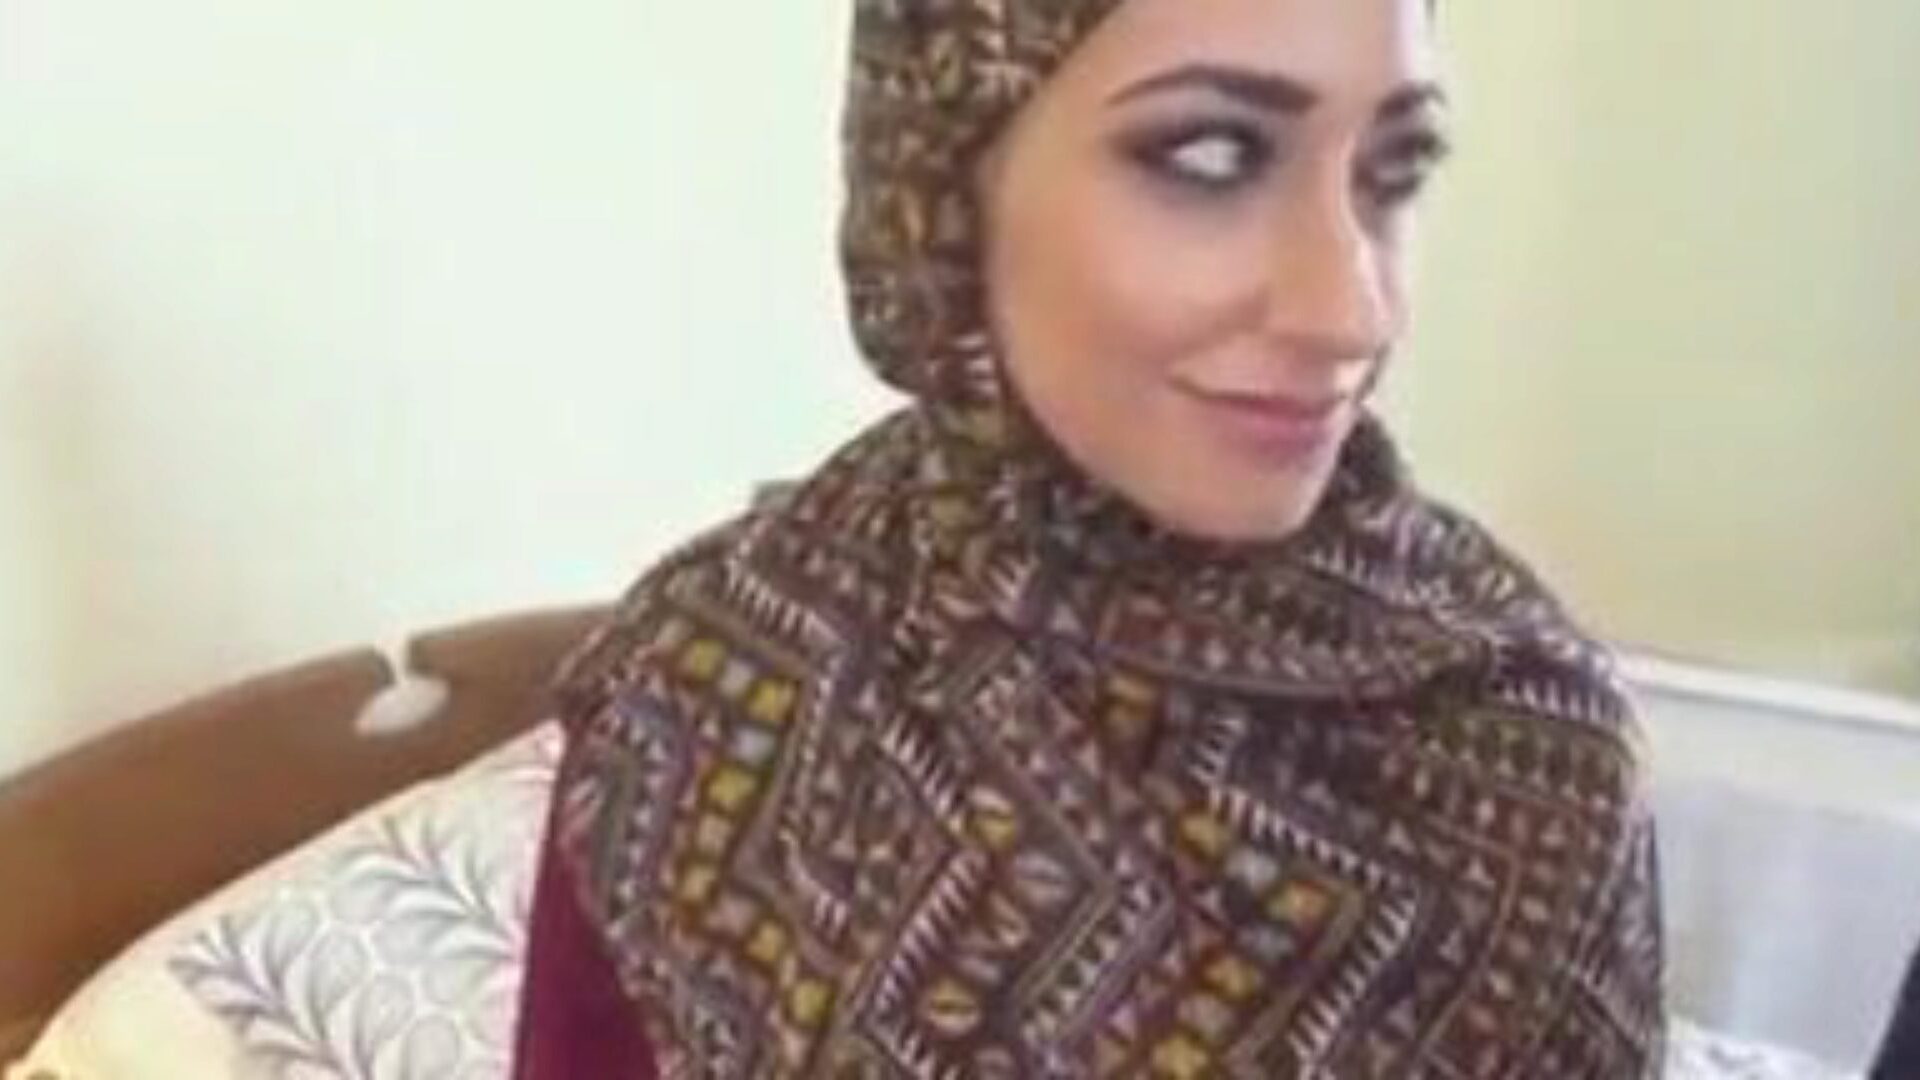 ragazza musulmana hijab che scopa, video porno gratis tubo musulmano cd guarda la scena del film ragazza hijab musulmana su xhamster, la più grande pagina web del tubo del sesso con tonnellate di tubo musulmano arabo gratuito e video porno hijab di YouTube